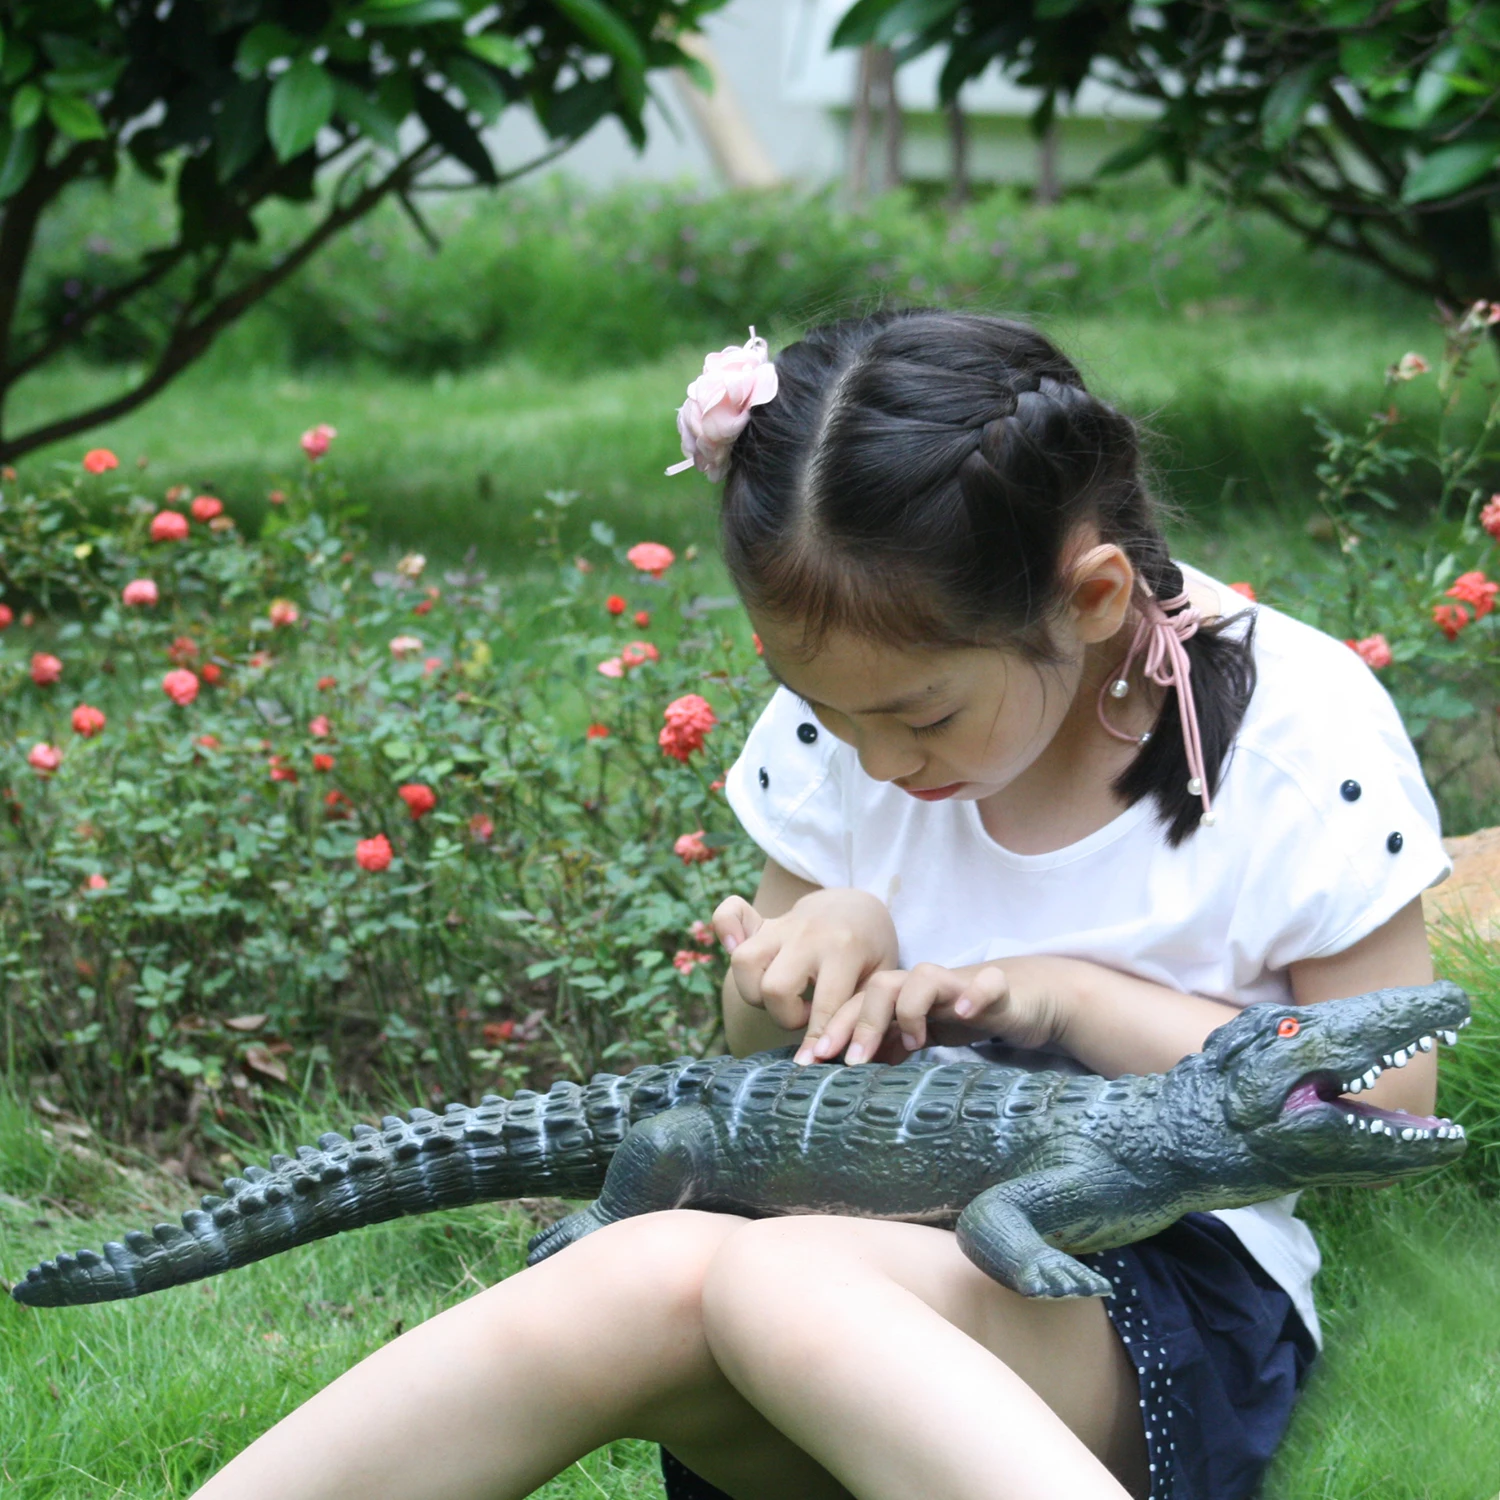 Huang Cheng Toys14 дюймов фигурка животного модель мягкая чучела мир динозавр Raptor Защитная зона Gojira король Монстры детские игрушки - Цвет: 04